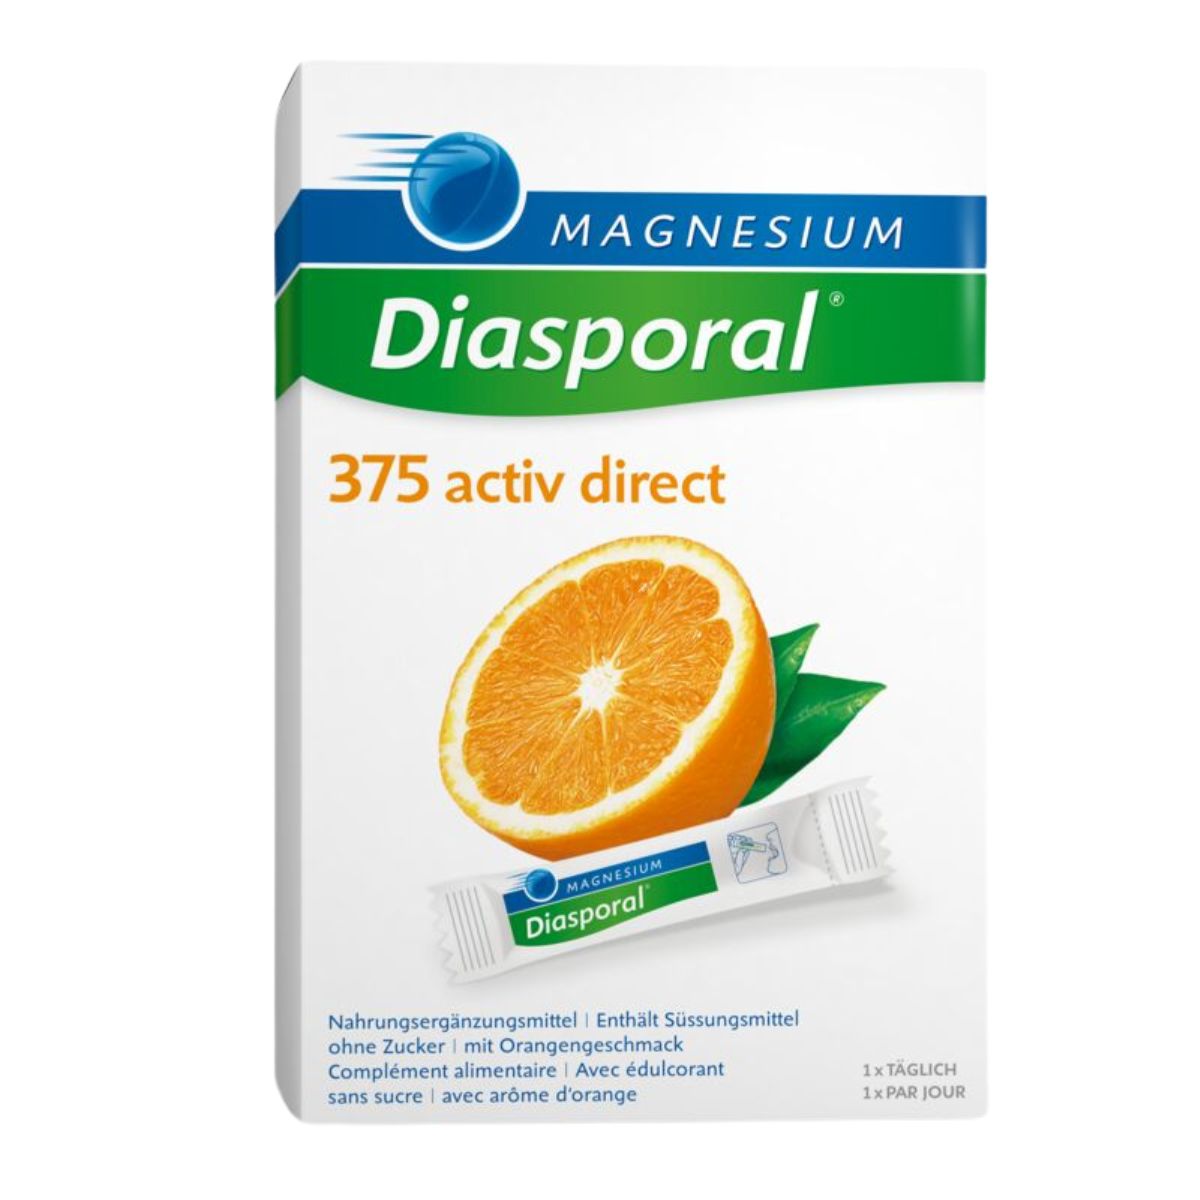 MAGNESIUM Diasporal Activ Direct orange 60 Stück